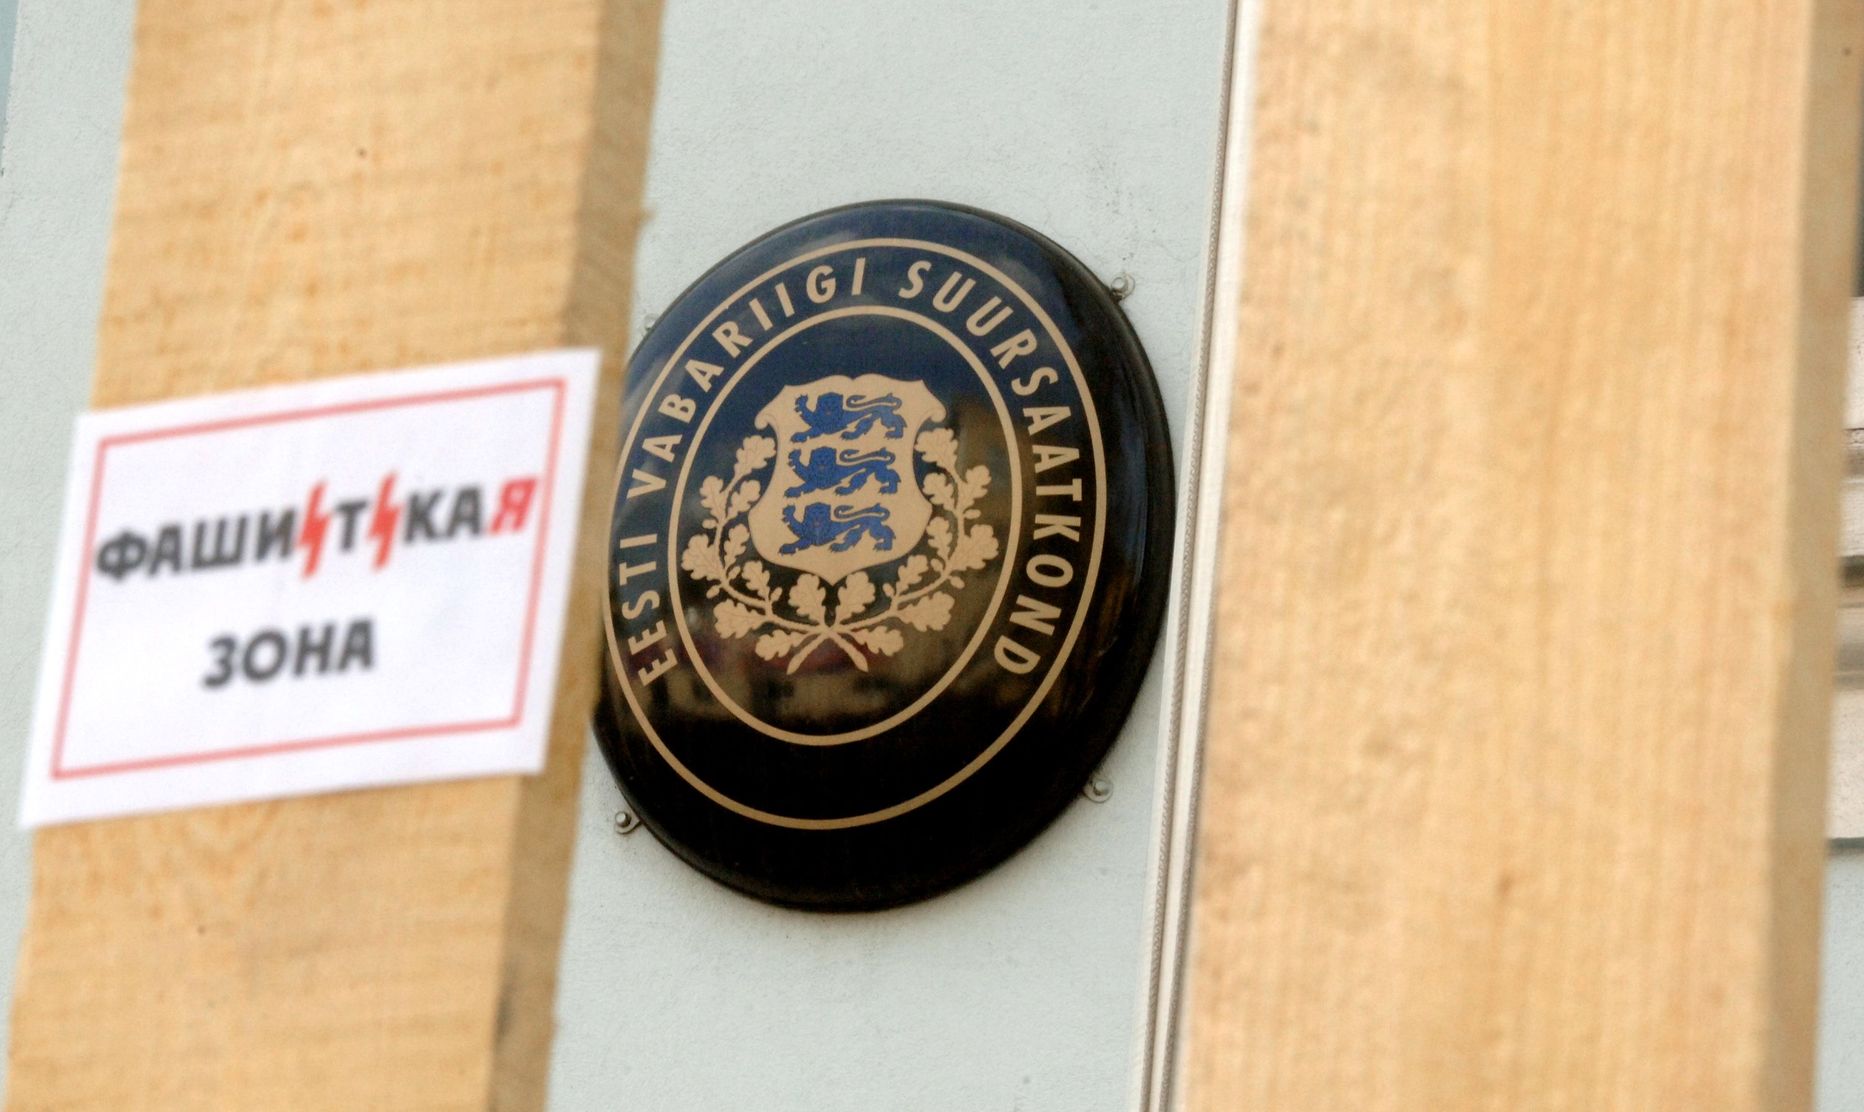 Pildil on Moskvas asuv Eesti saatkond, mida našistid «kaunistasid» kirjaga fašistlik tsoon.